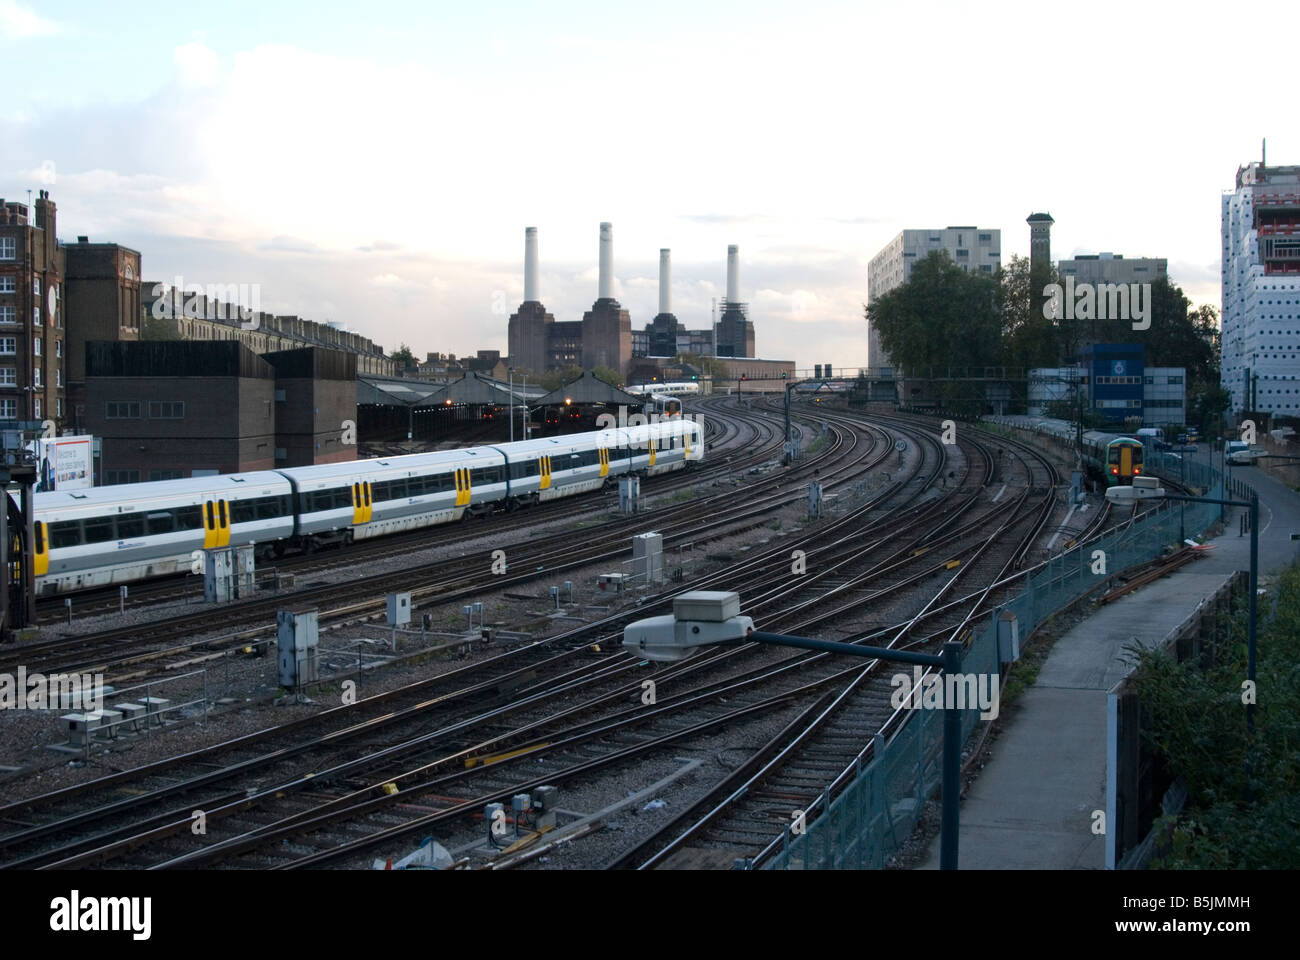 Un'immagine della linea ferroviaria e la stazione del treno che conduce alla stazione di Victoria con Battersea Power Station in background Foto Stock